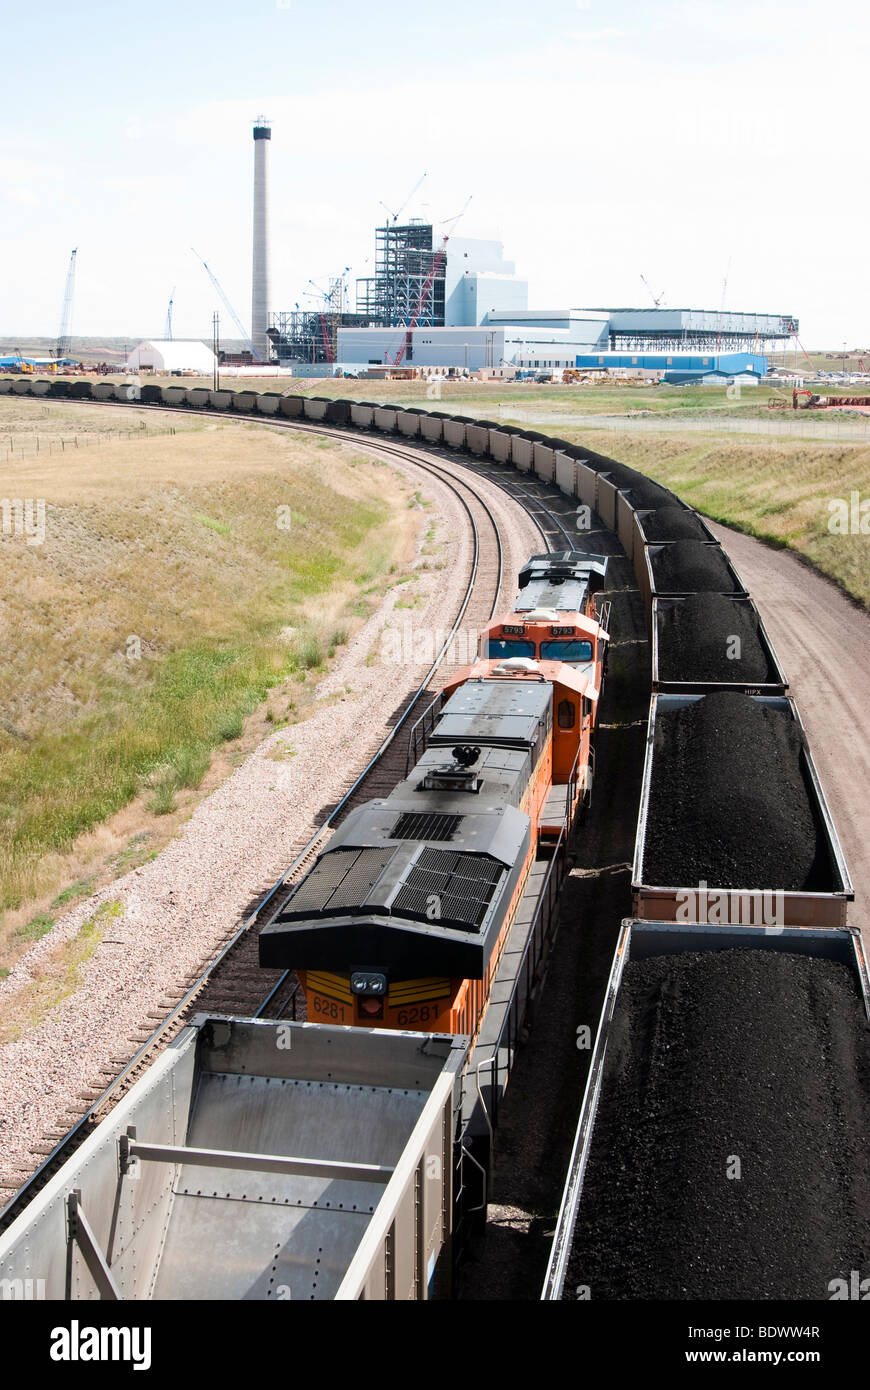 Linee ferroviarie che conduce alla forcella a secco la stazione centrale a carbone in costruzione in Wyoming. Foto Stock